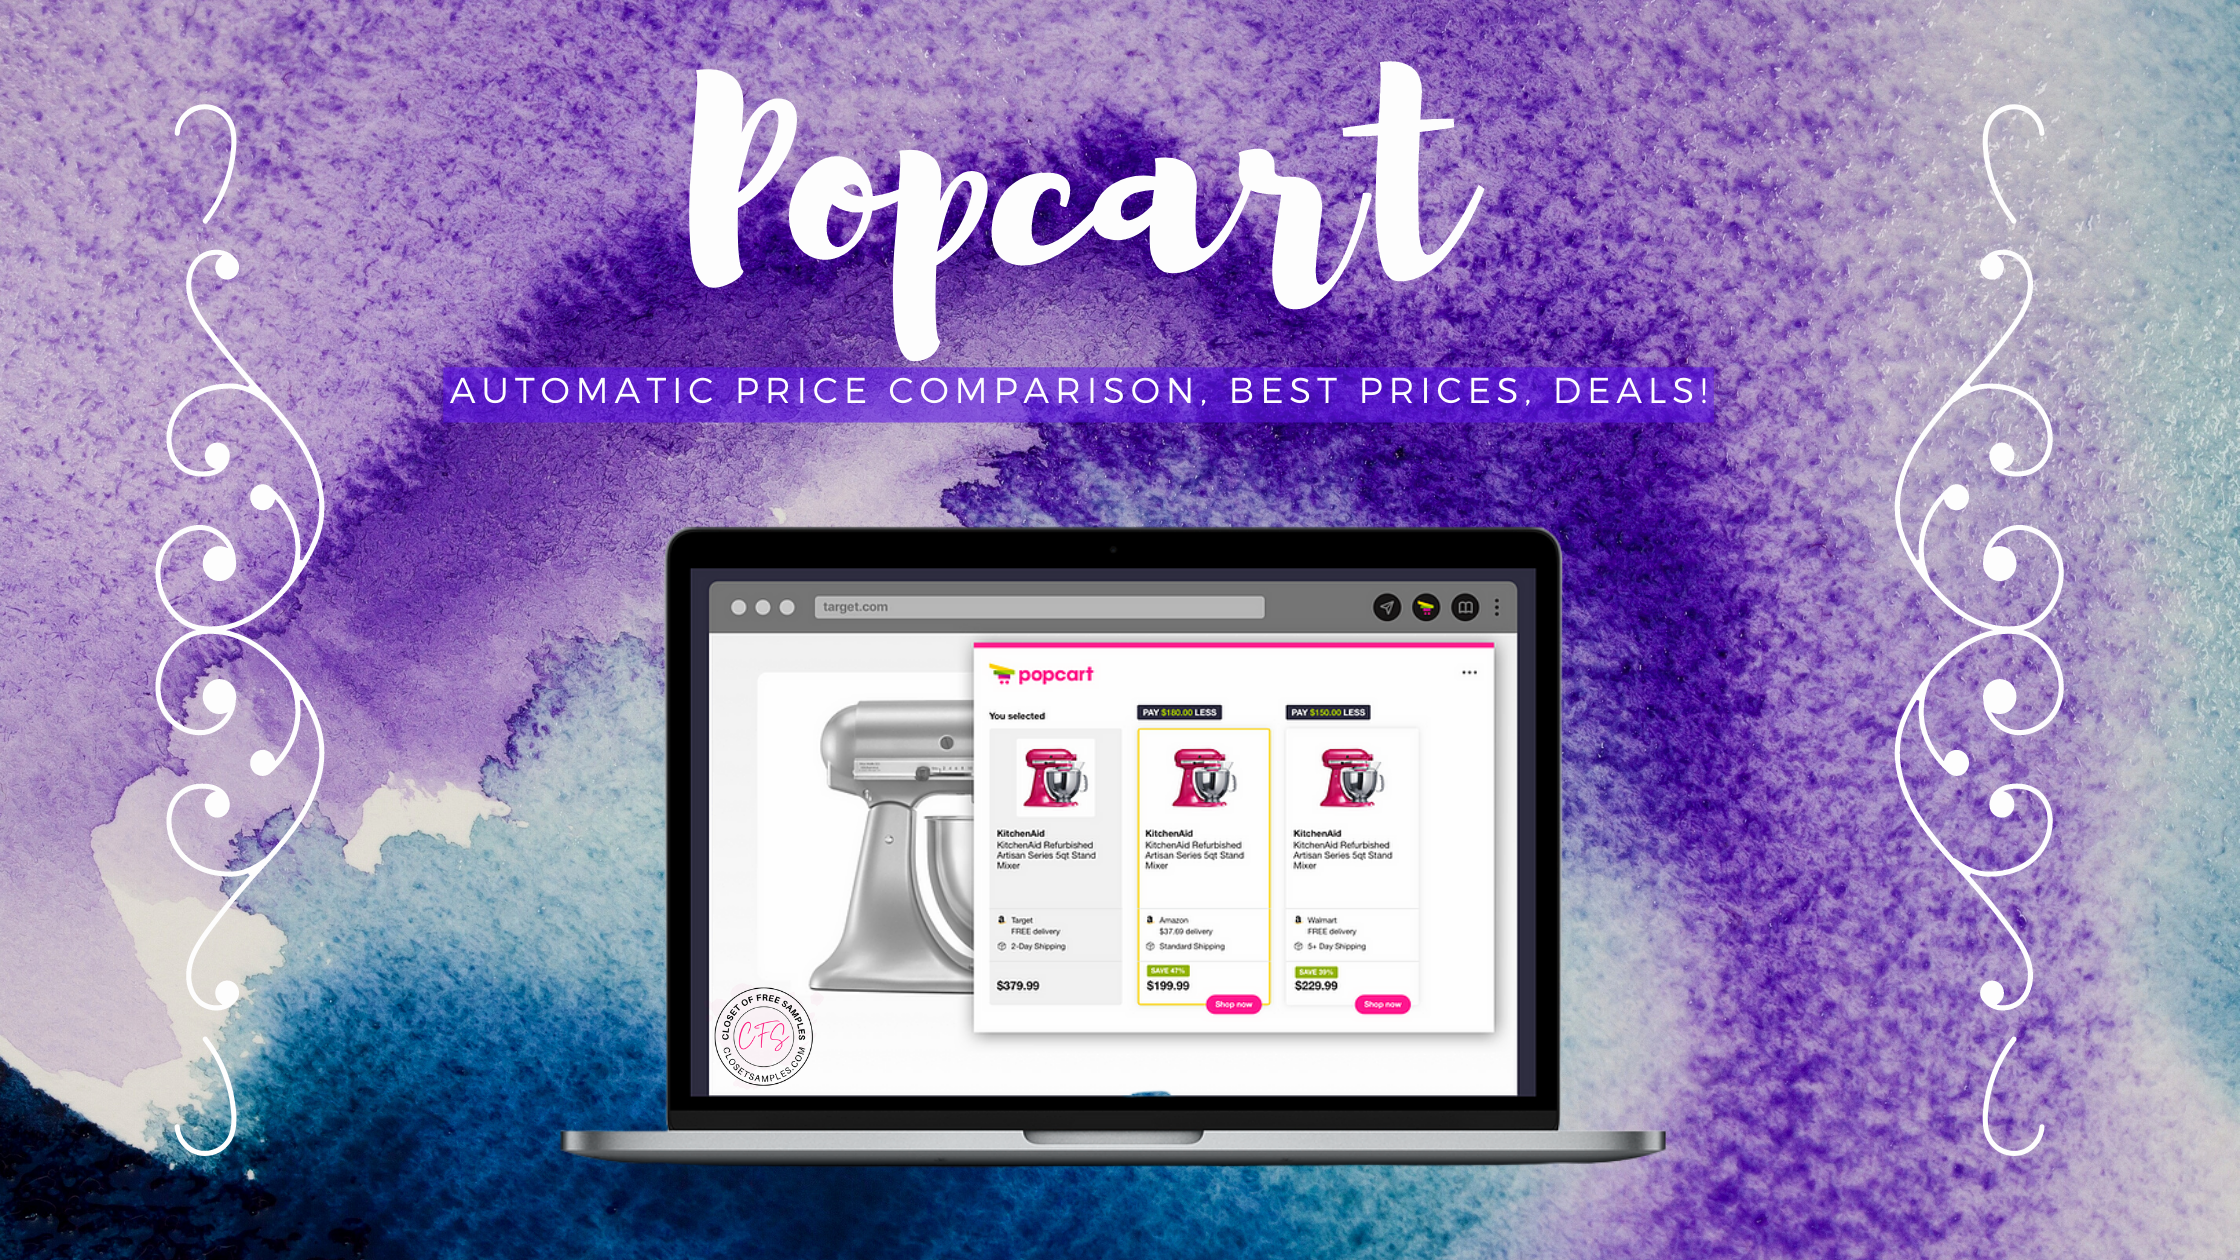 Popcart-Automatic-Price-Comparison-Best-Prices-Deals-closetsamples.png